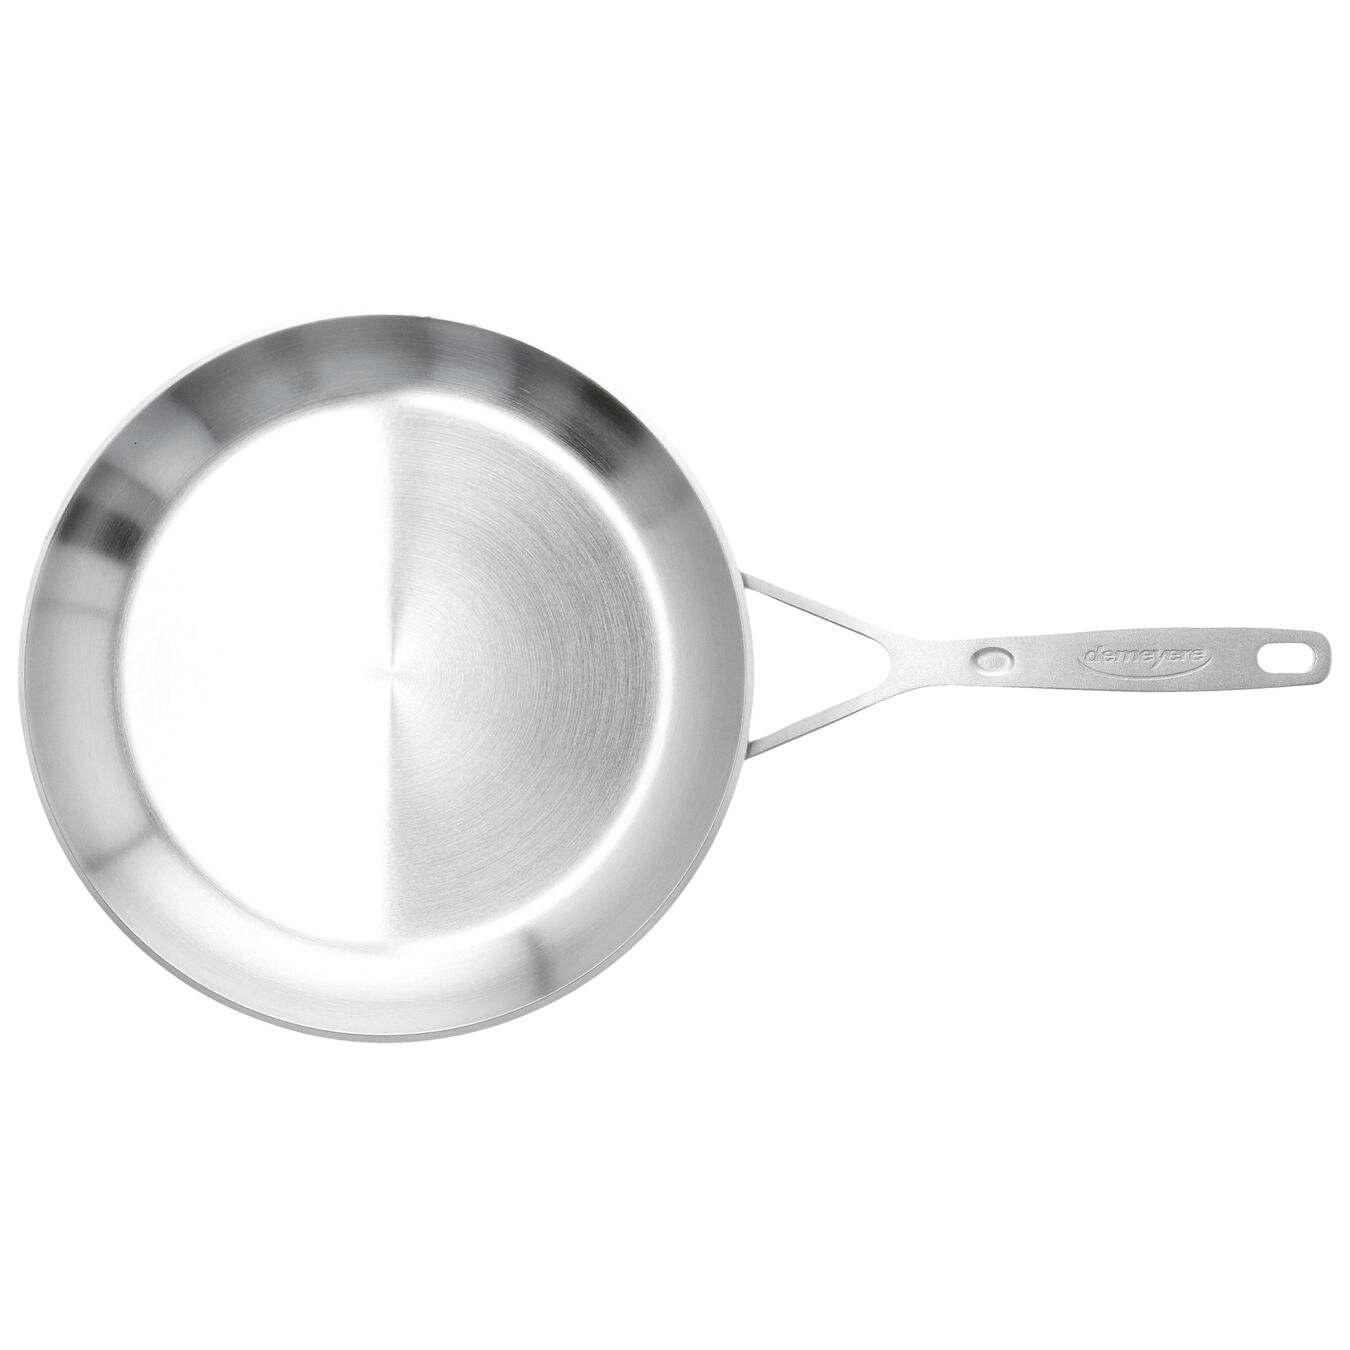 Searing Pan, silver,,large 4